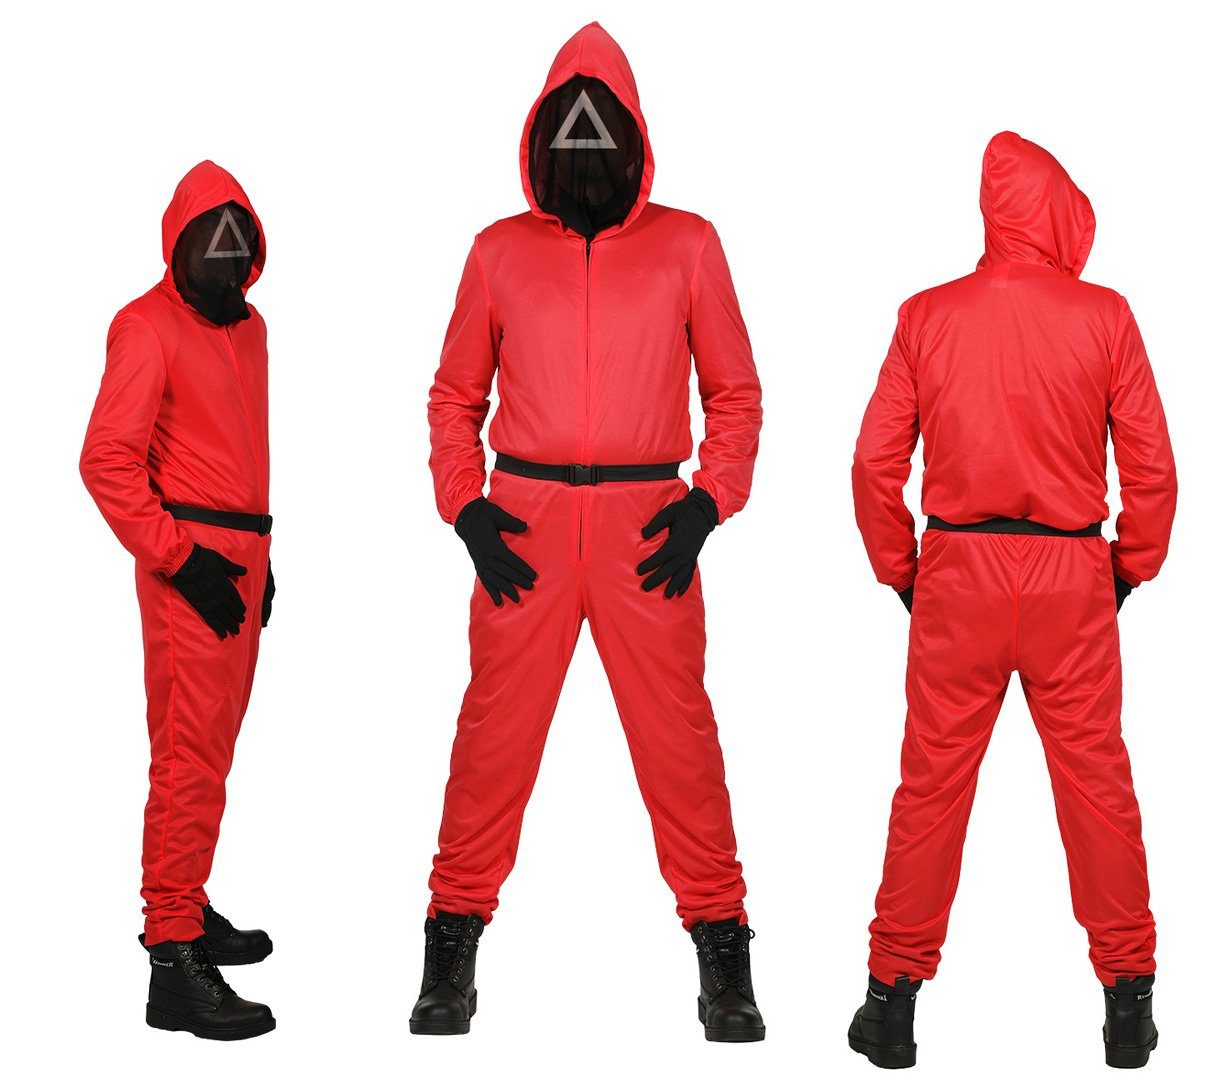 Wilbers Kostüm »Roter Overall - Team rot - Dreieck - 140 - 164 cm - mit  Maske aus Netzstoff - Kinder Kostüm« online kaufen | OTTO